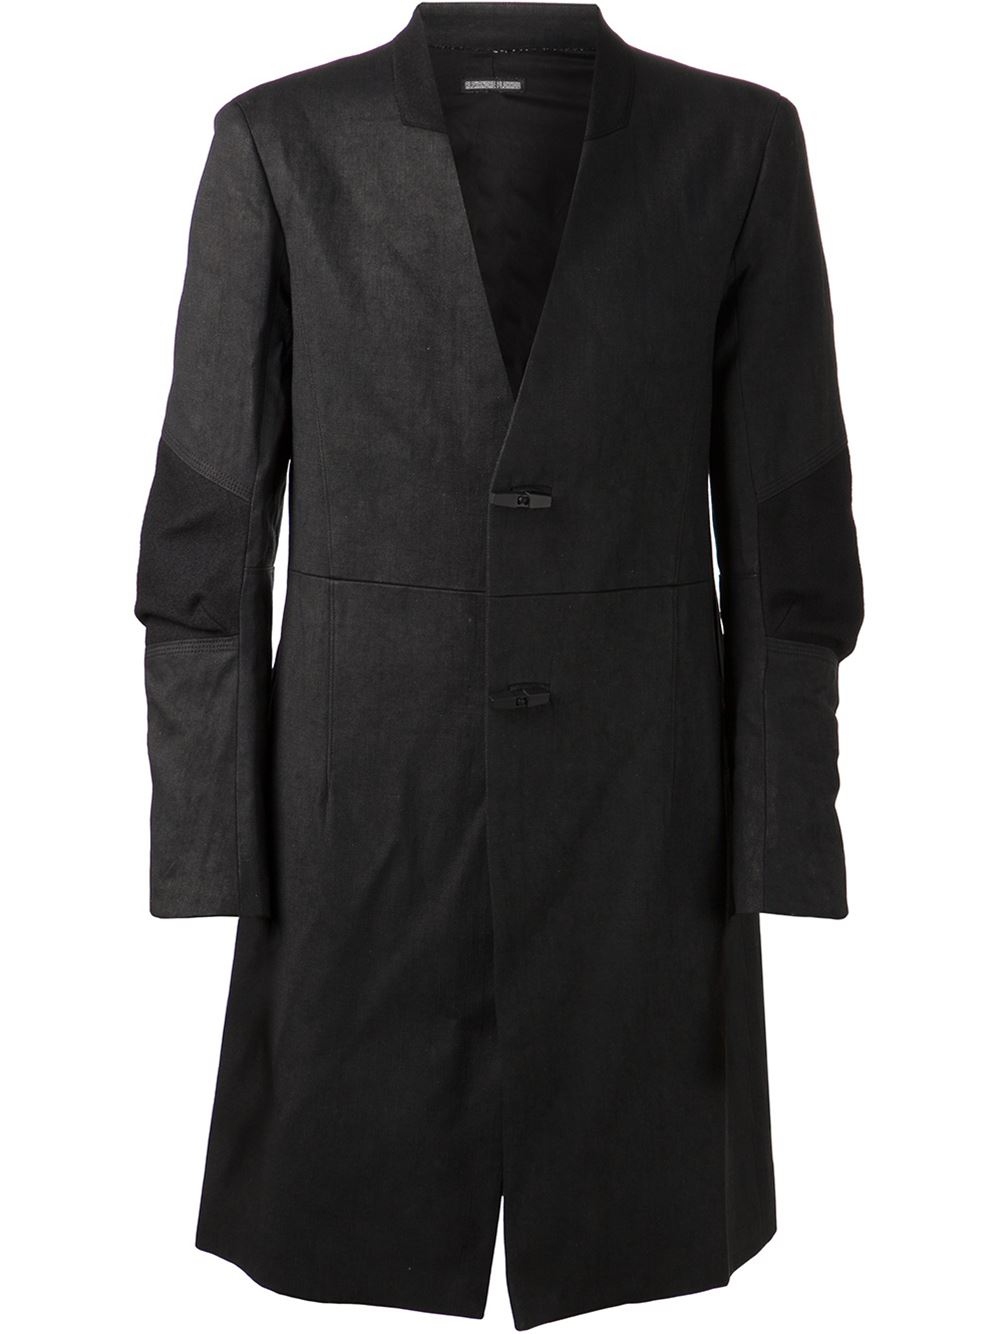 Alexandre plokhov Articulated Coat in Black for Men | Lyst